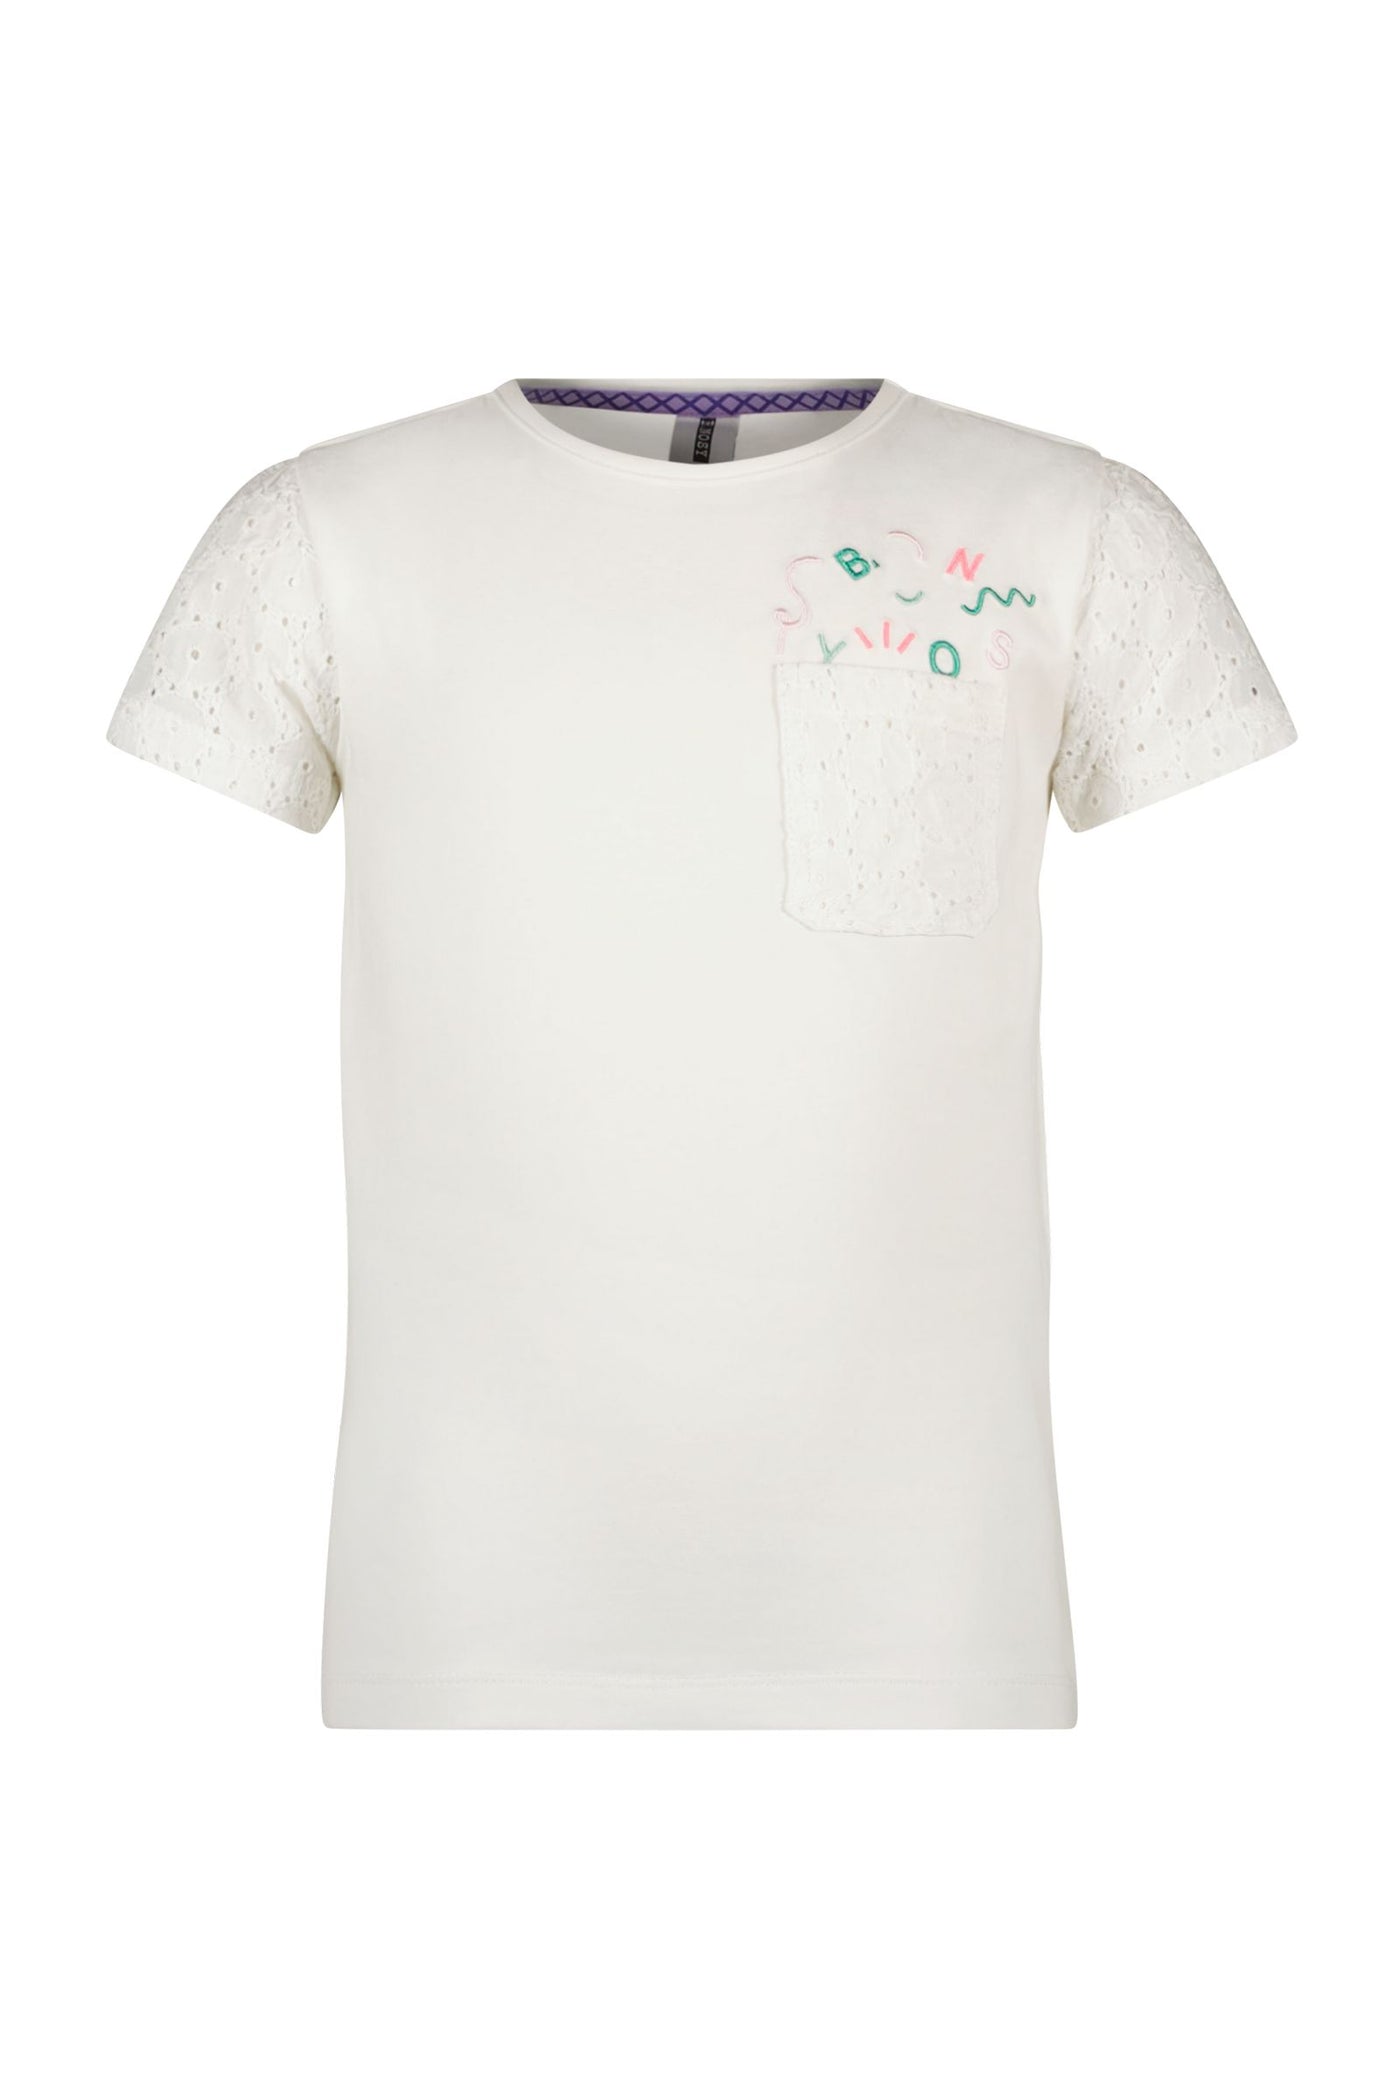 Bnosy S24 Girls Kids Emma B.Nosy girls t-shirt off-white Y403-5483 012